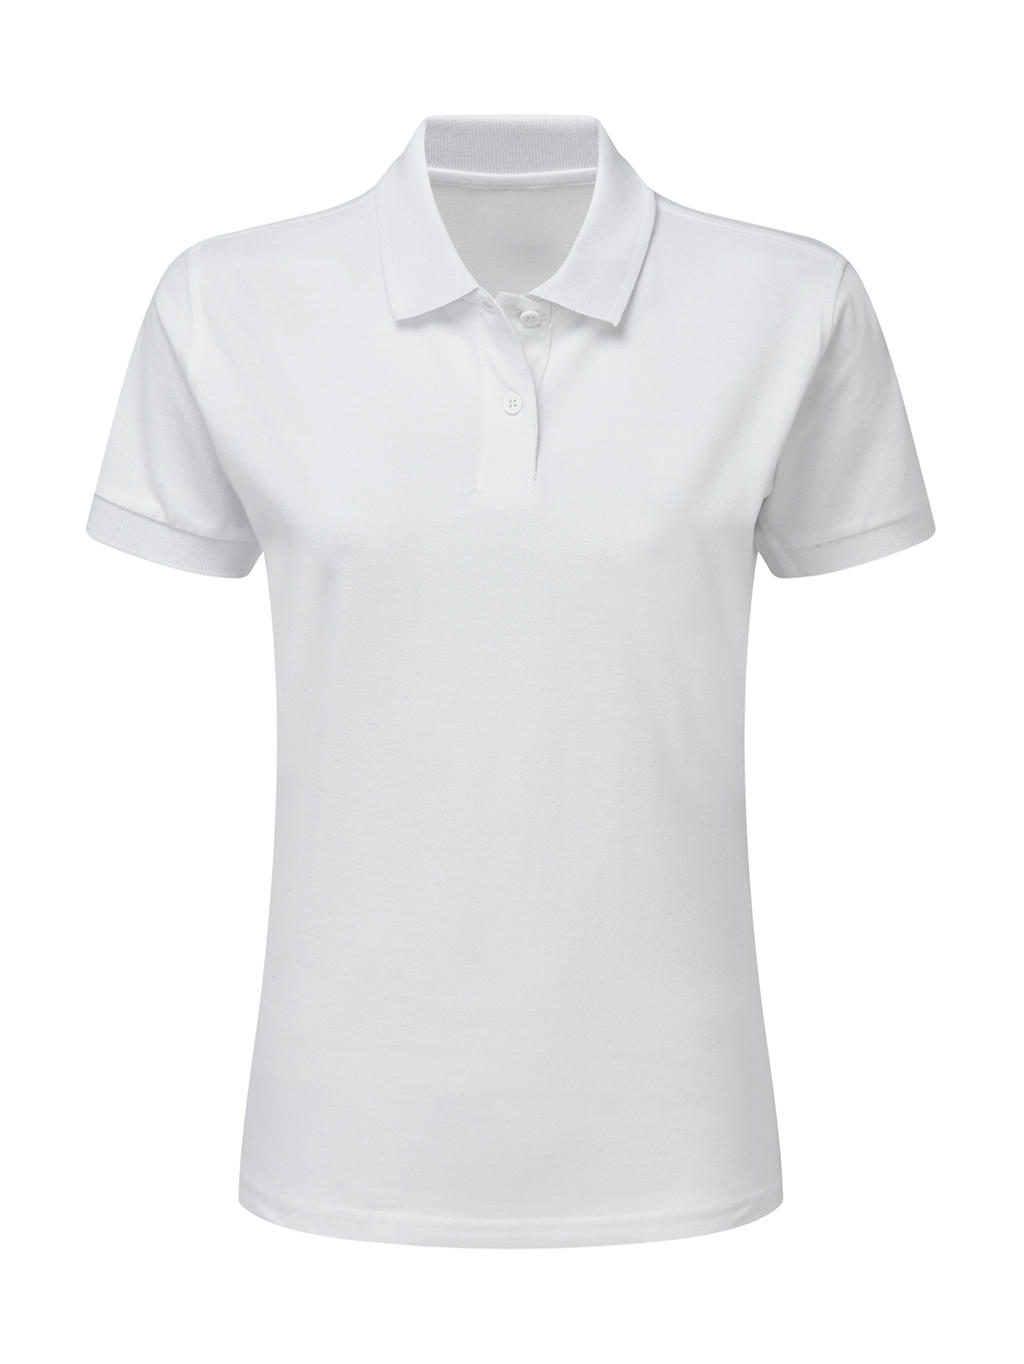  Ladies Cotton Polo in Farbe White